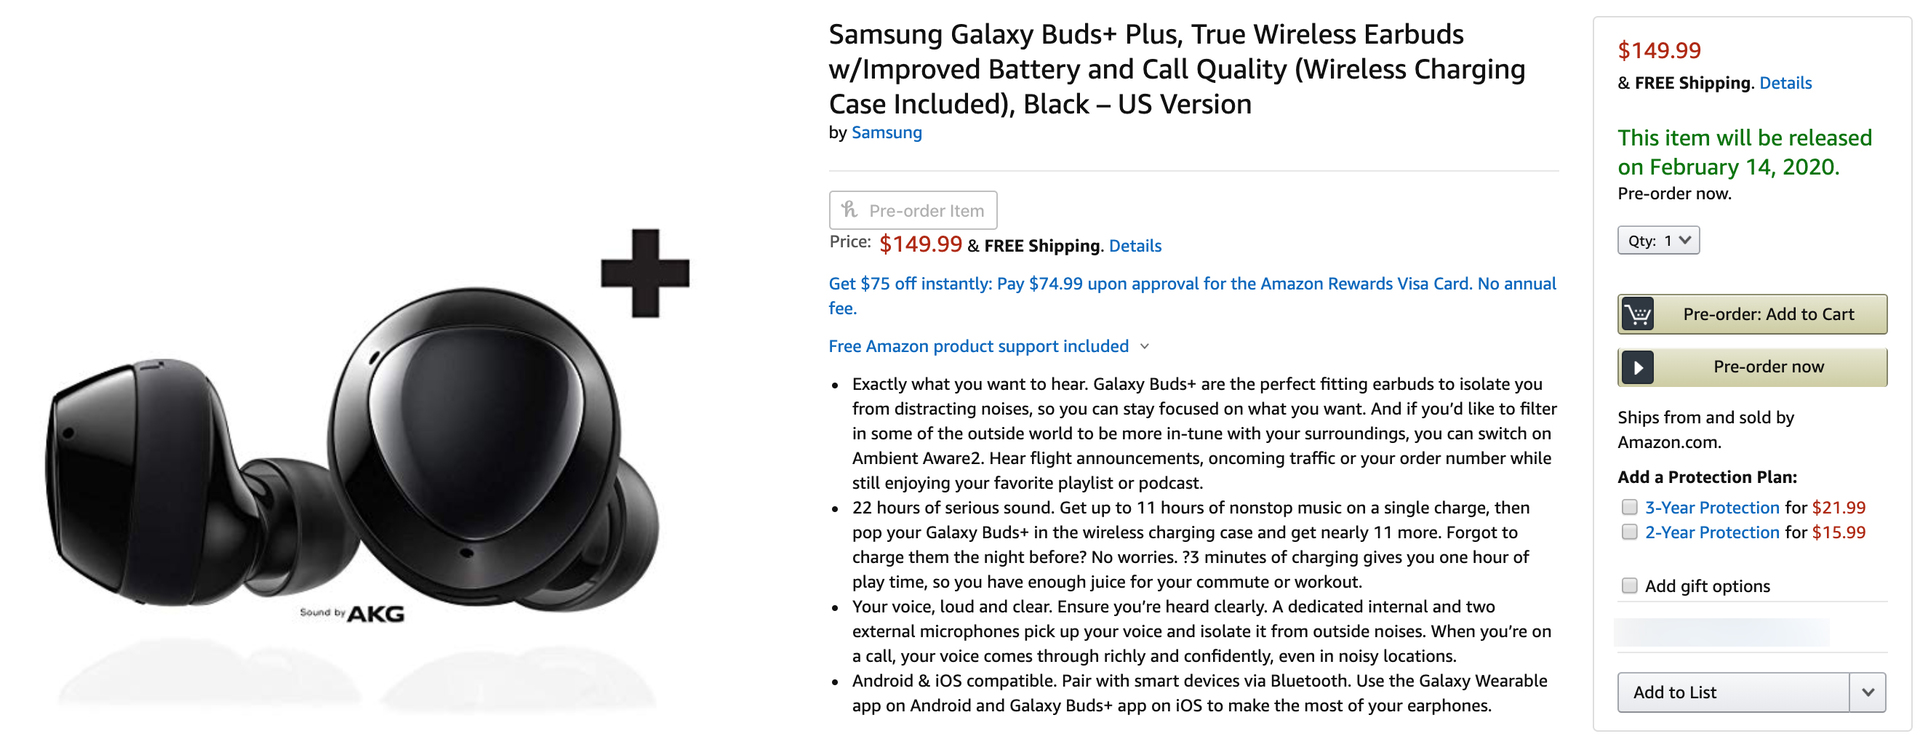 buy samsung galaxy buds plus amazon true wireless earbuds